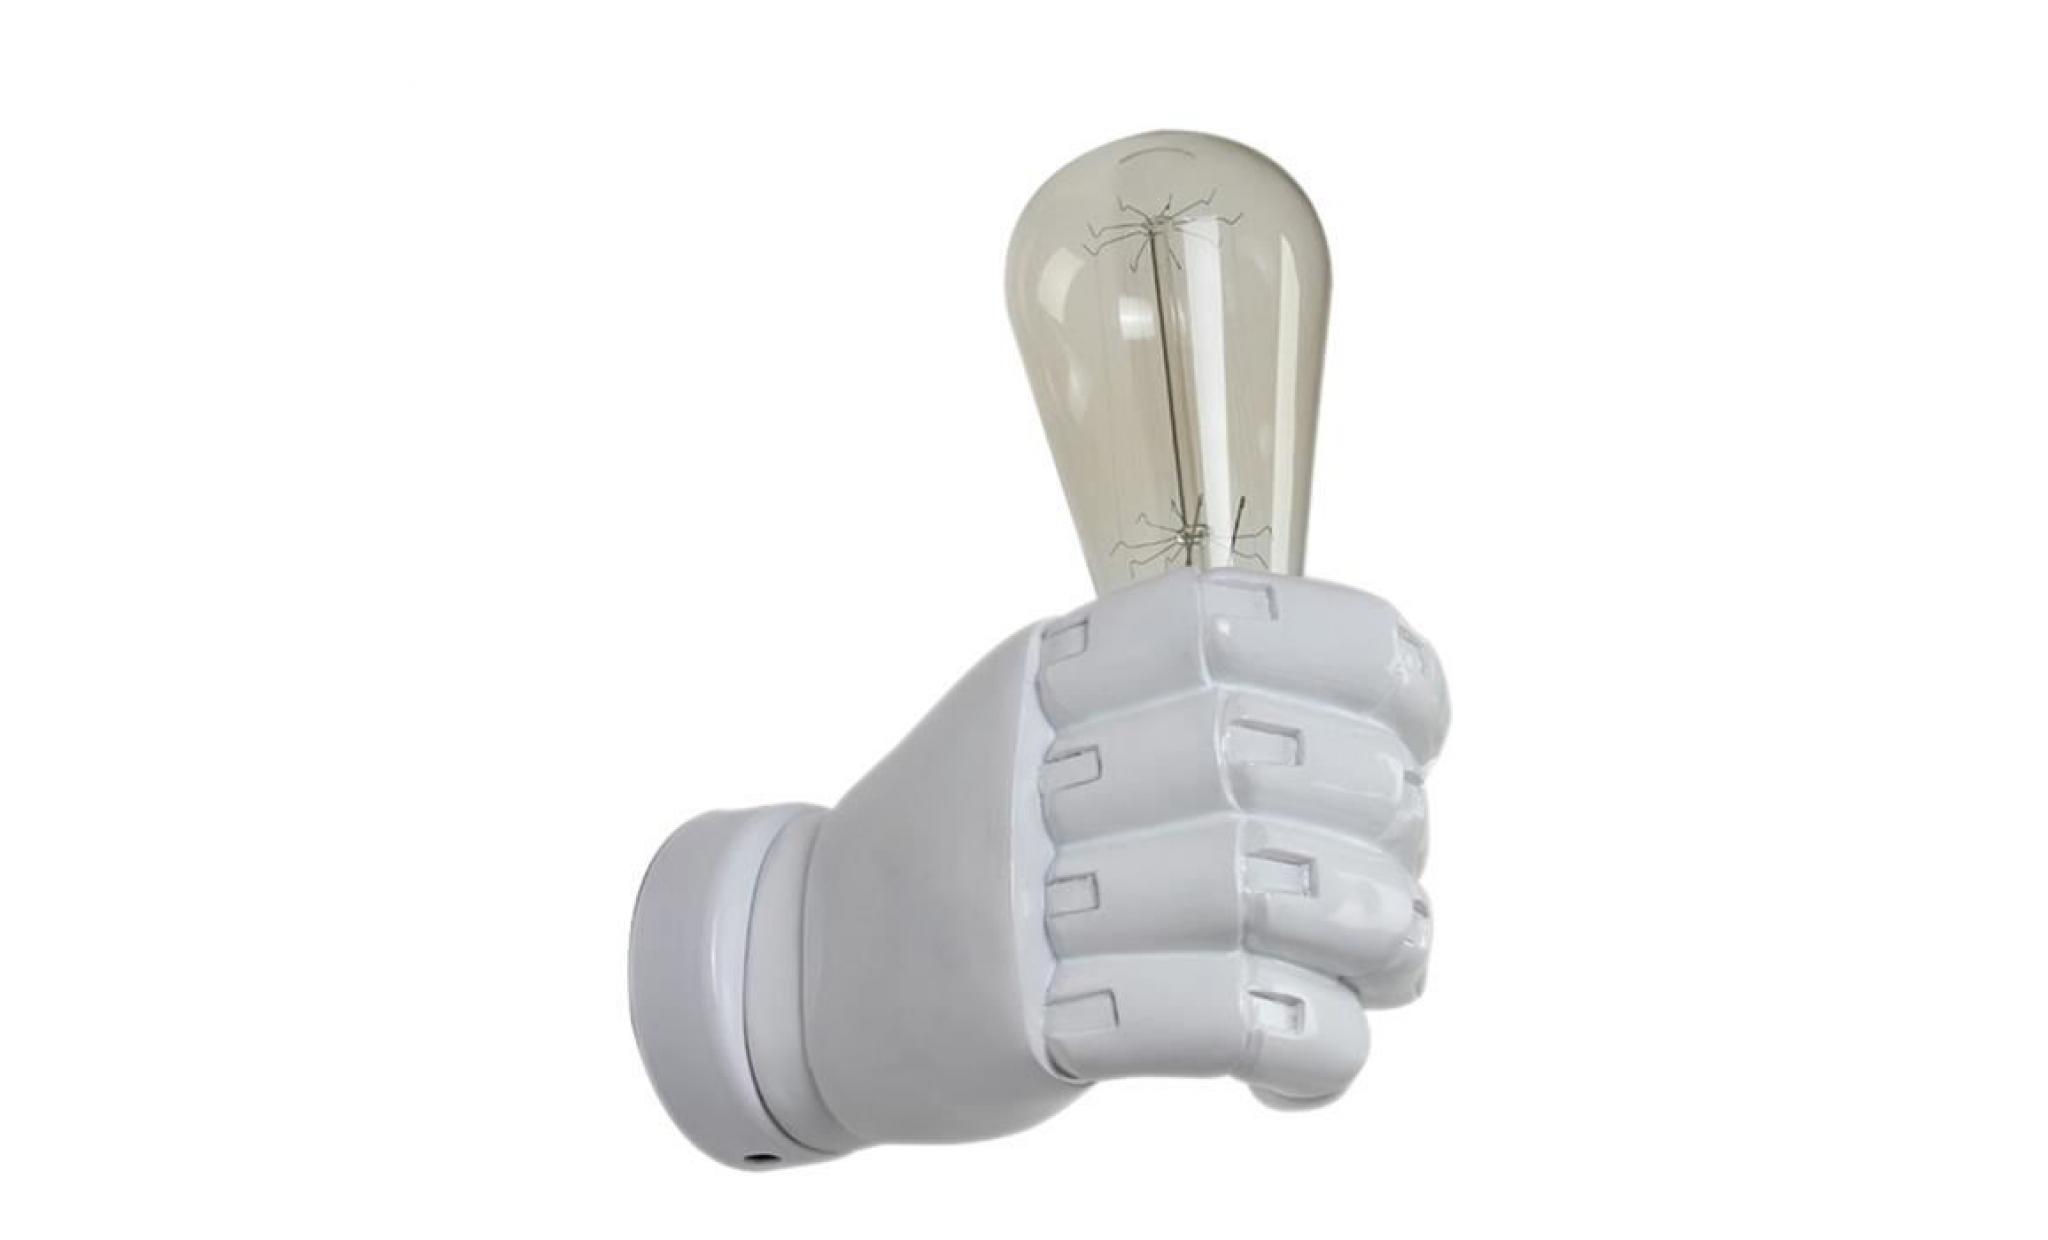 blanche applique vintage de poing de main droite en resine loft lampe industrielle restaurant de sushi bar restaurant cafe